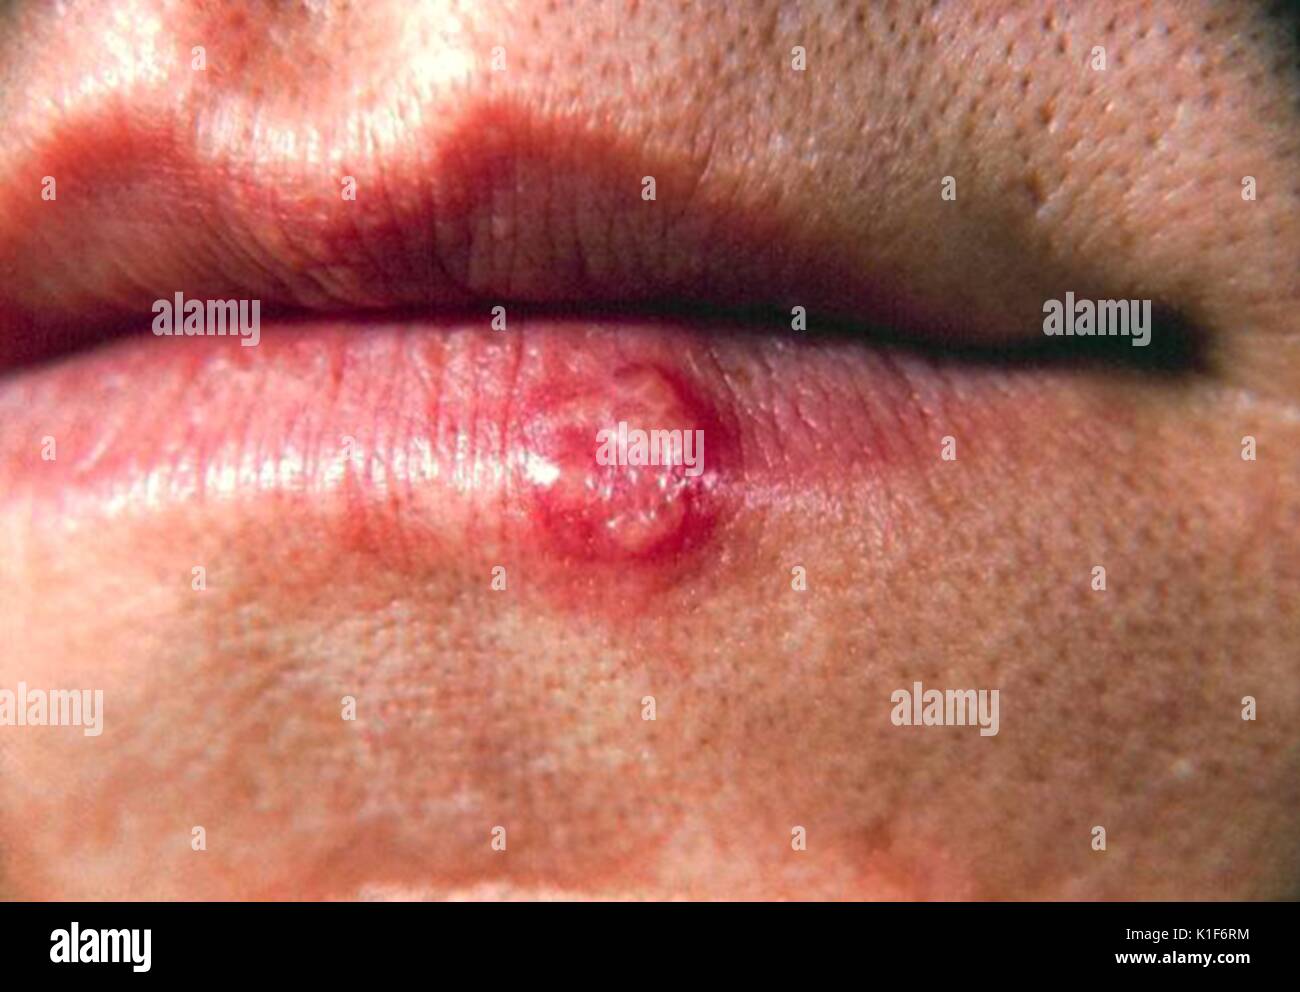 C'est un close-up de la lèvre du patient (PHIL 5434) avec une lésion de  l'herpès sur la lèvre inférieure en raison de la (HSV1) Agent pathogène. Le  virus herpès simplex de type1